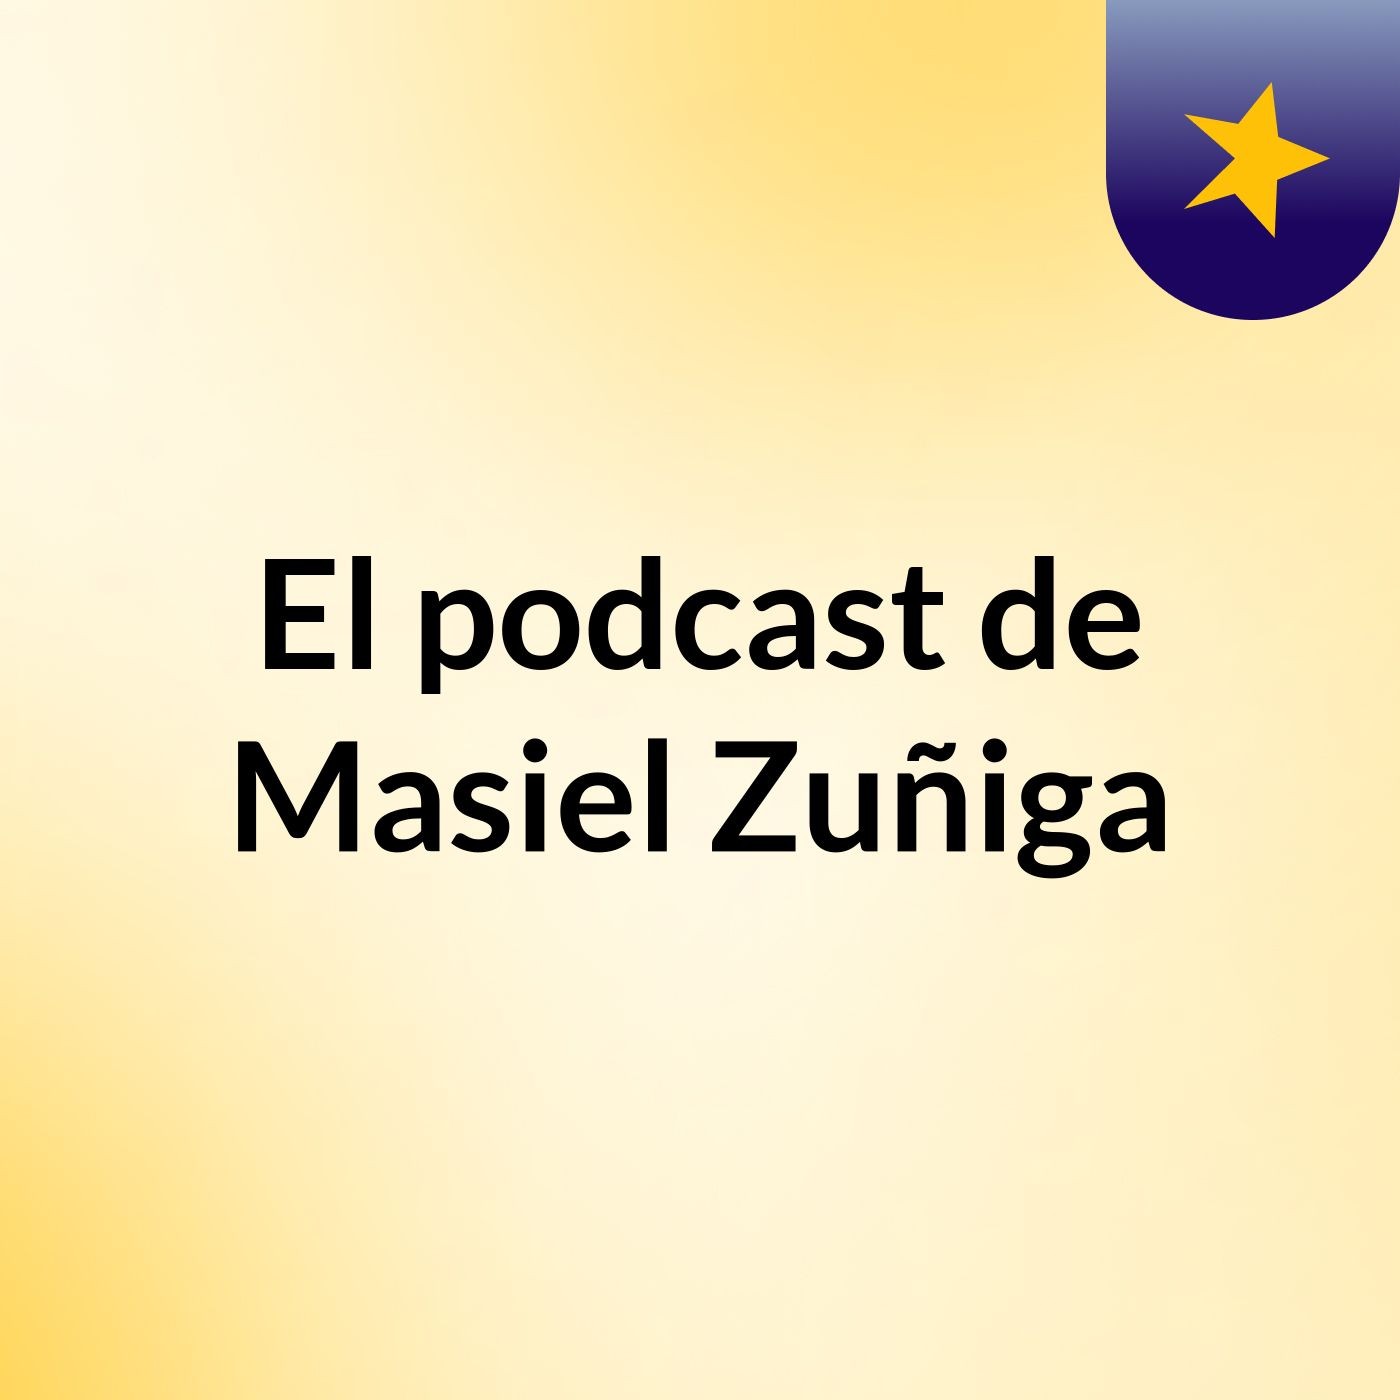 El podcast de Masiel Zuñiga